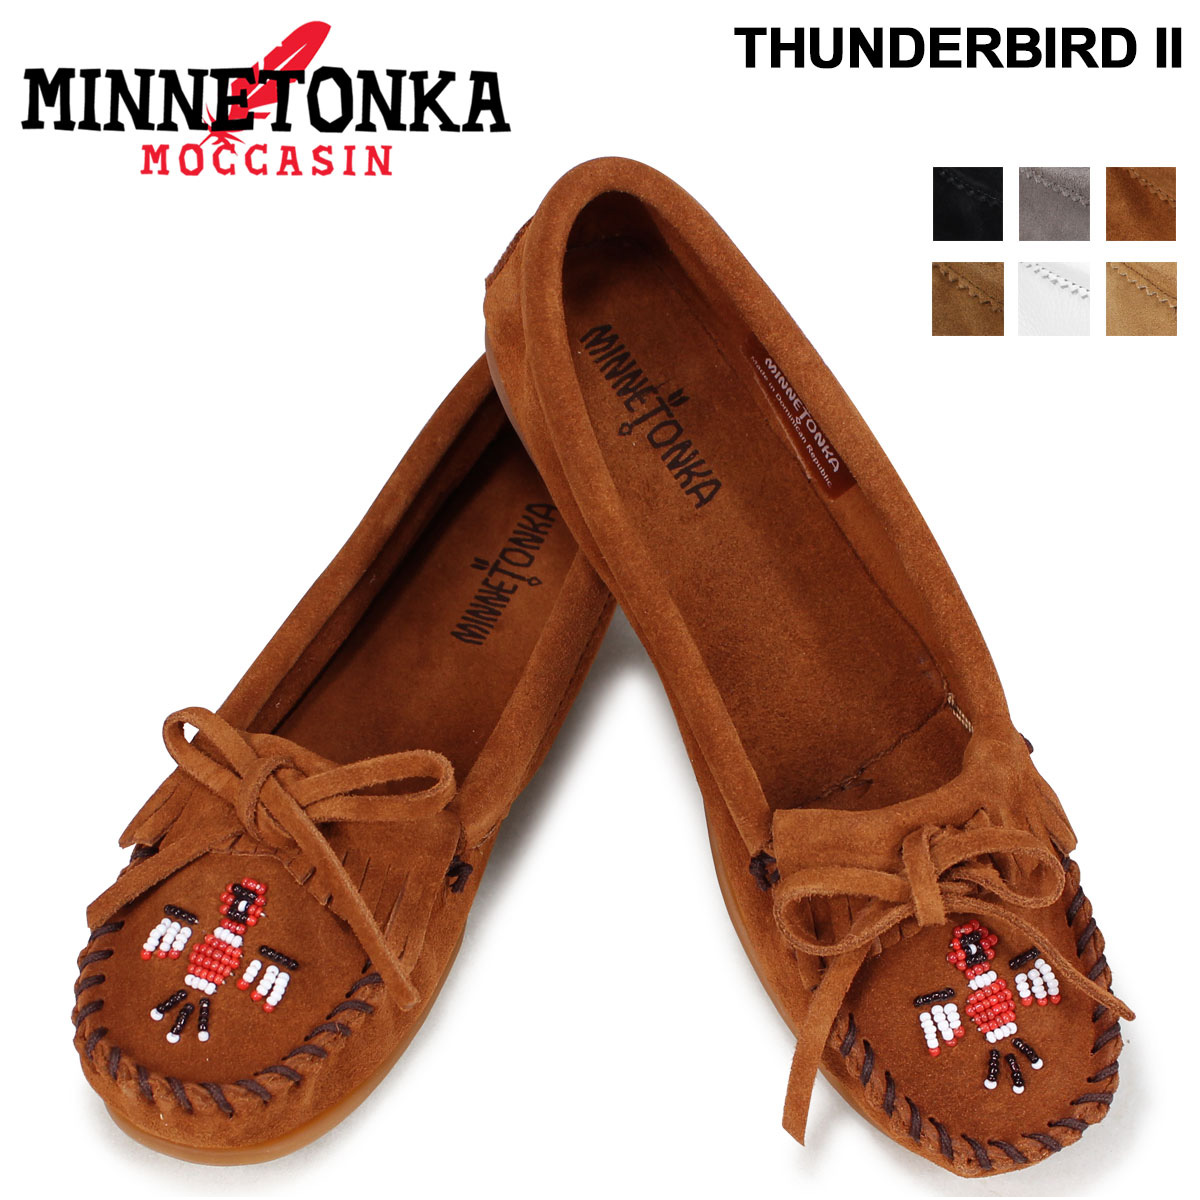 期間限定キャンペーン ミネトンカ MINNETONKA モカシン サンダーバード 正規品 THUNDERBIRD II レディース 